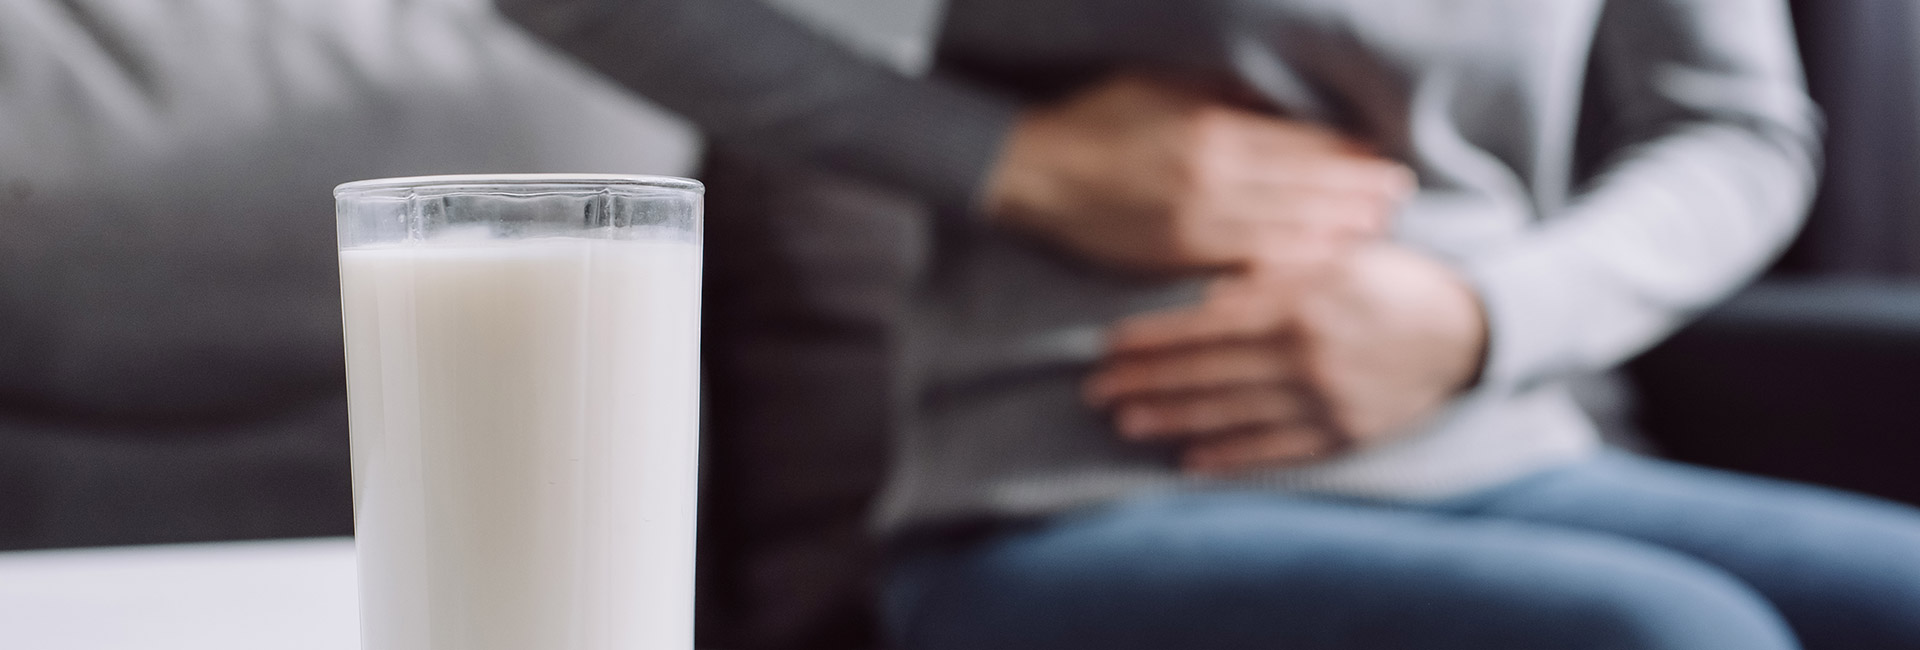 Intolerância à lactose: é muito simples resolver